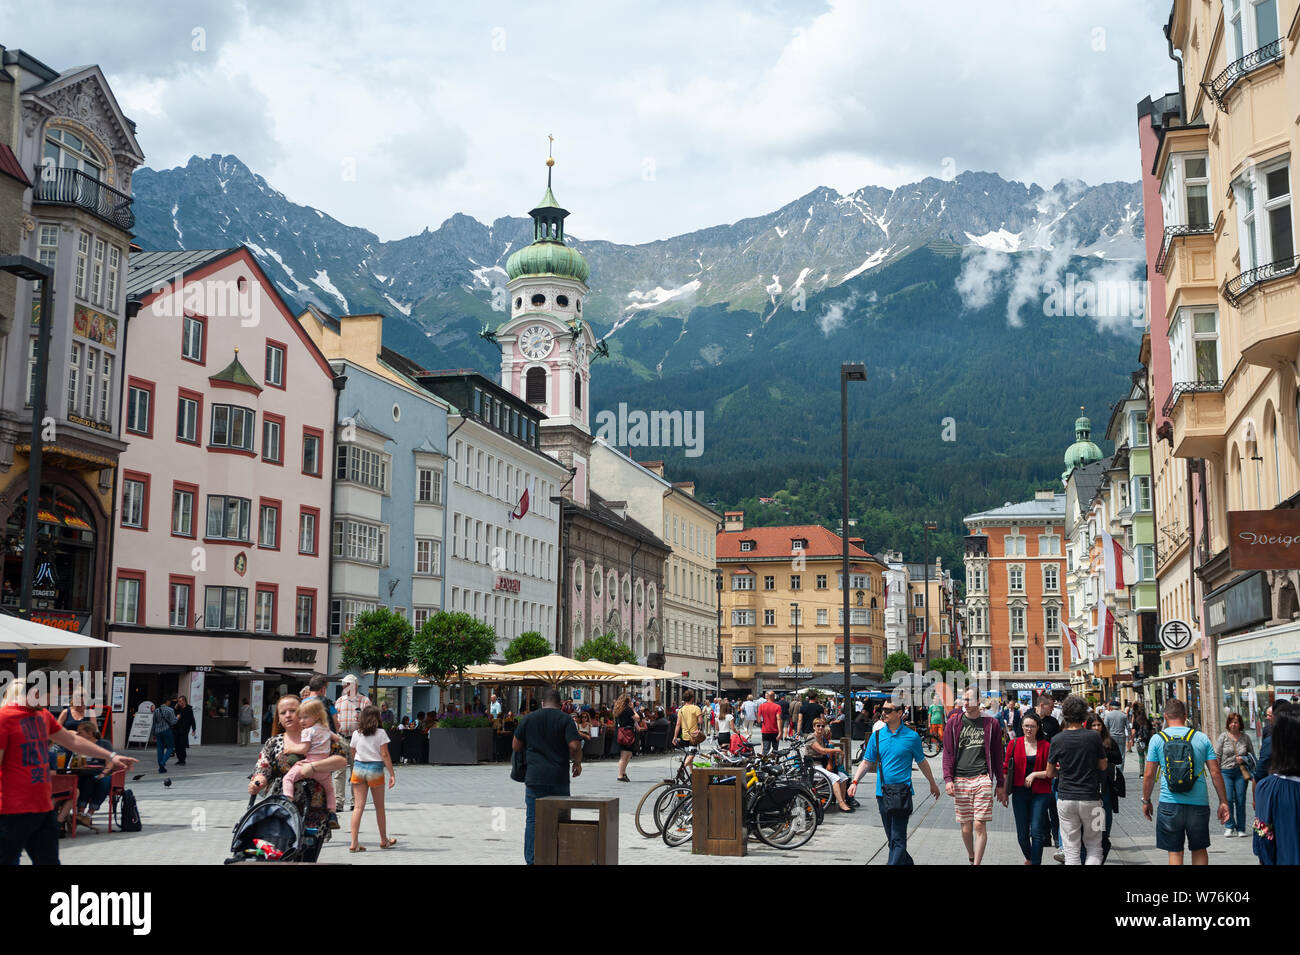 22.06.2019, Innsbruck, in Tirolo, Austria, Europa - Vista del Maria-Theresien-Strasse, zona pedonale con le montagne sullo sfondo. Foto Stock